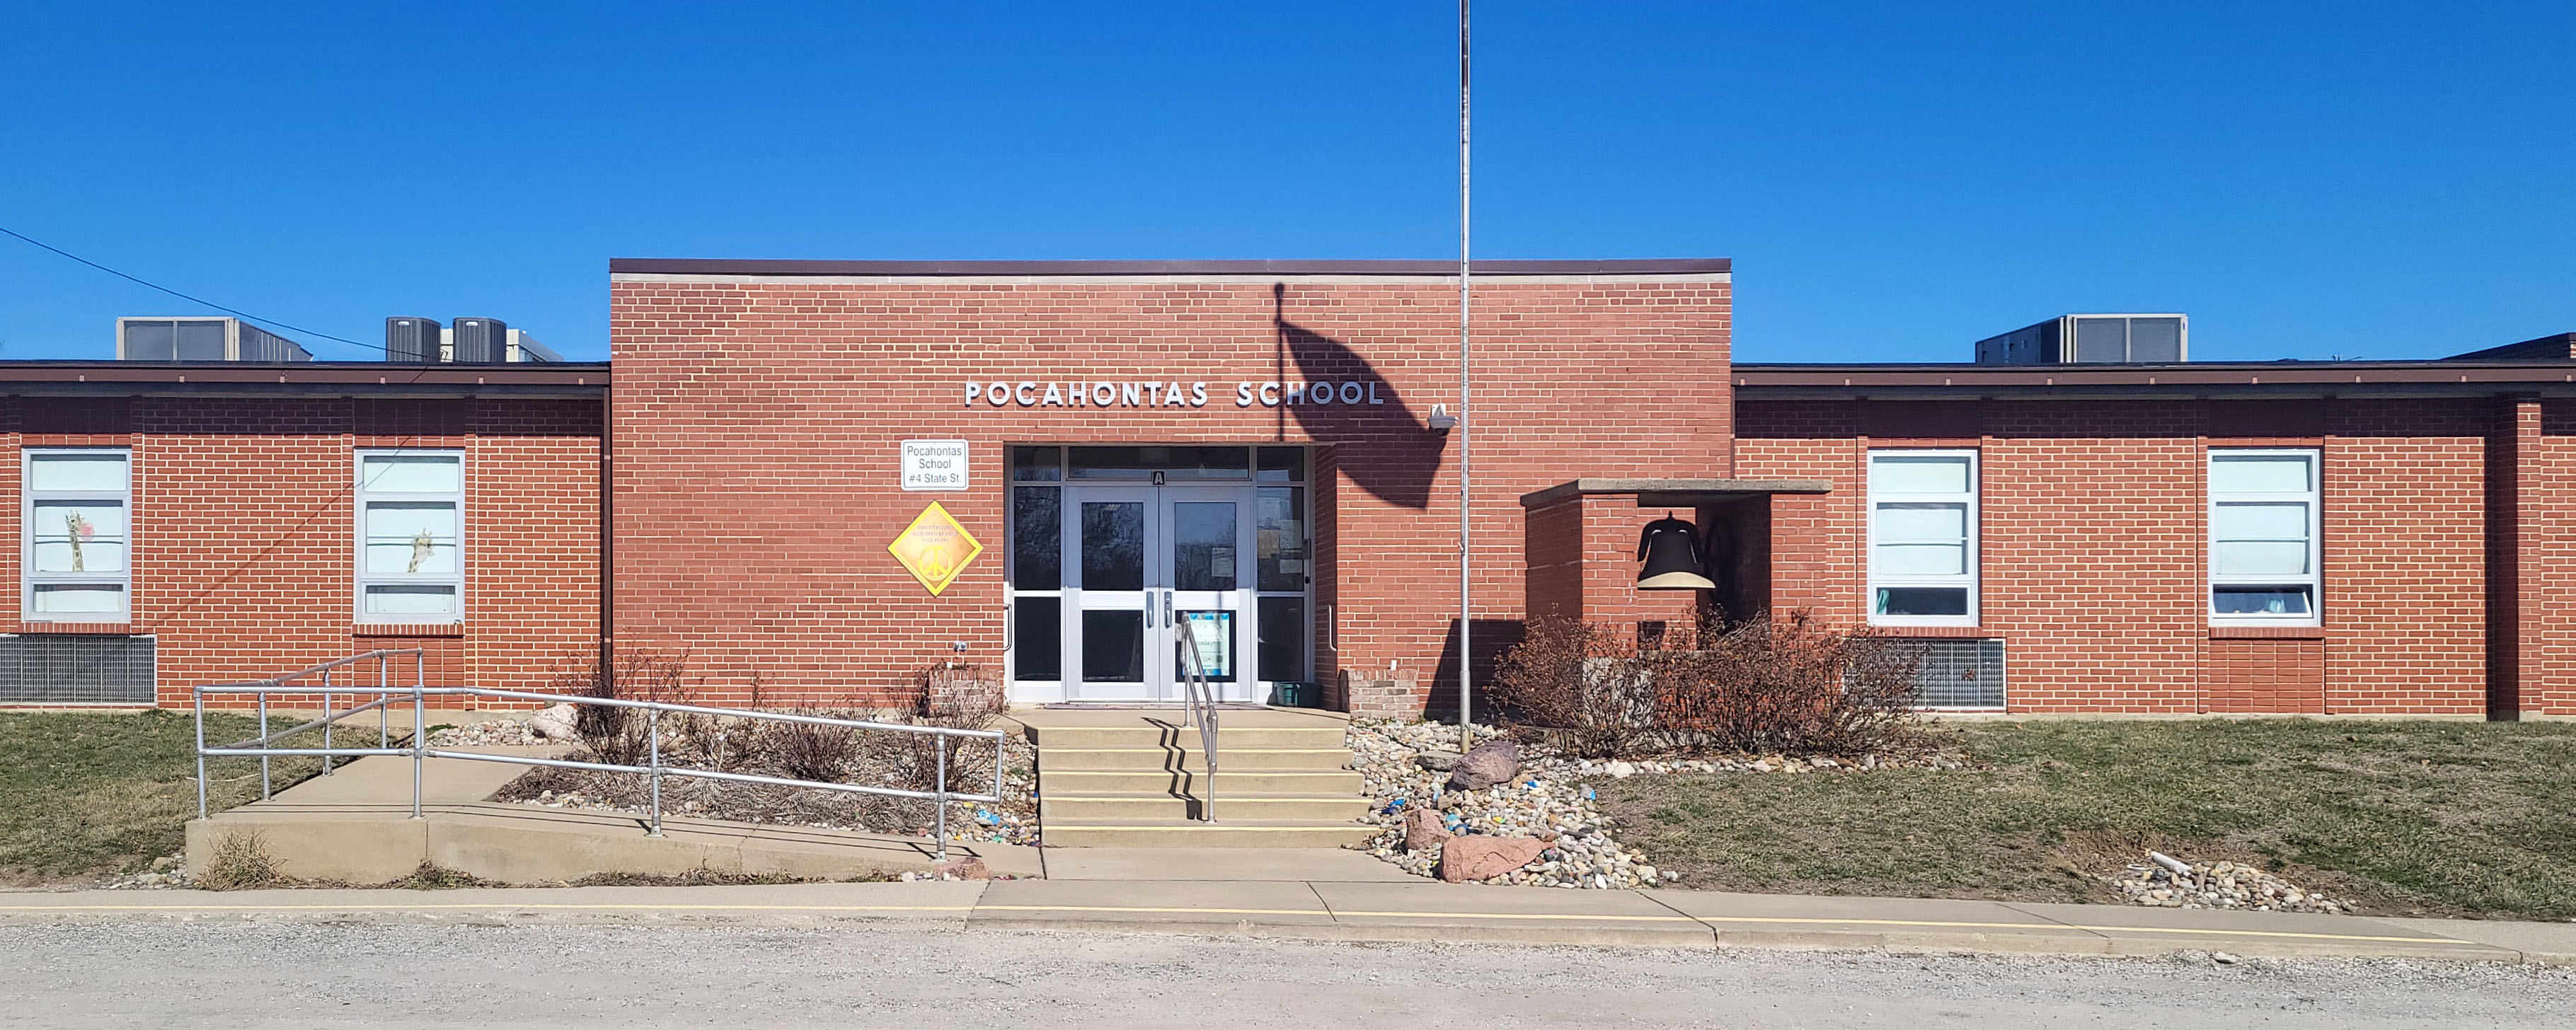 Pocahontas Elementary School